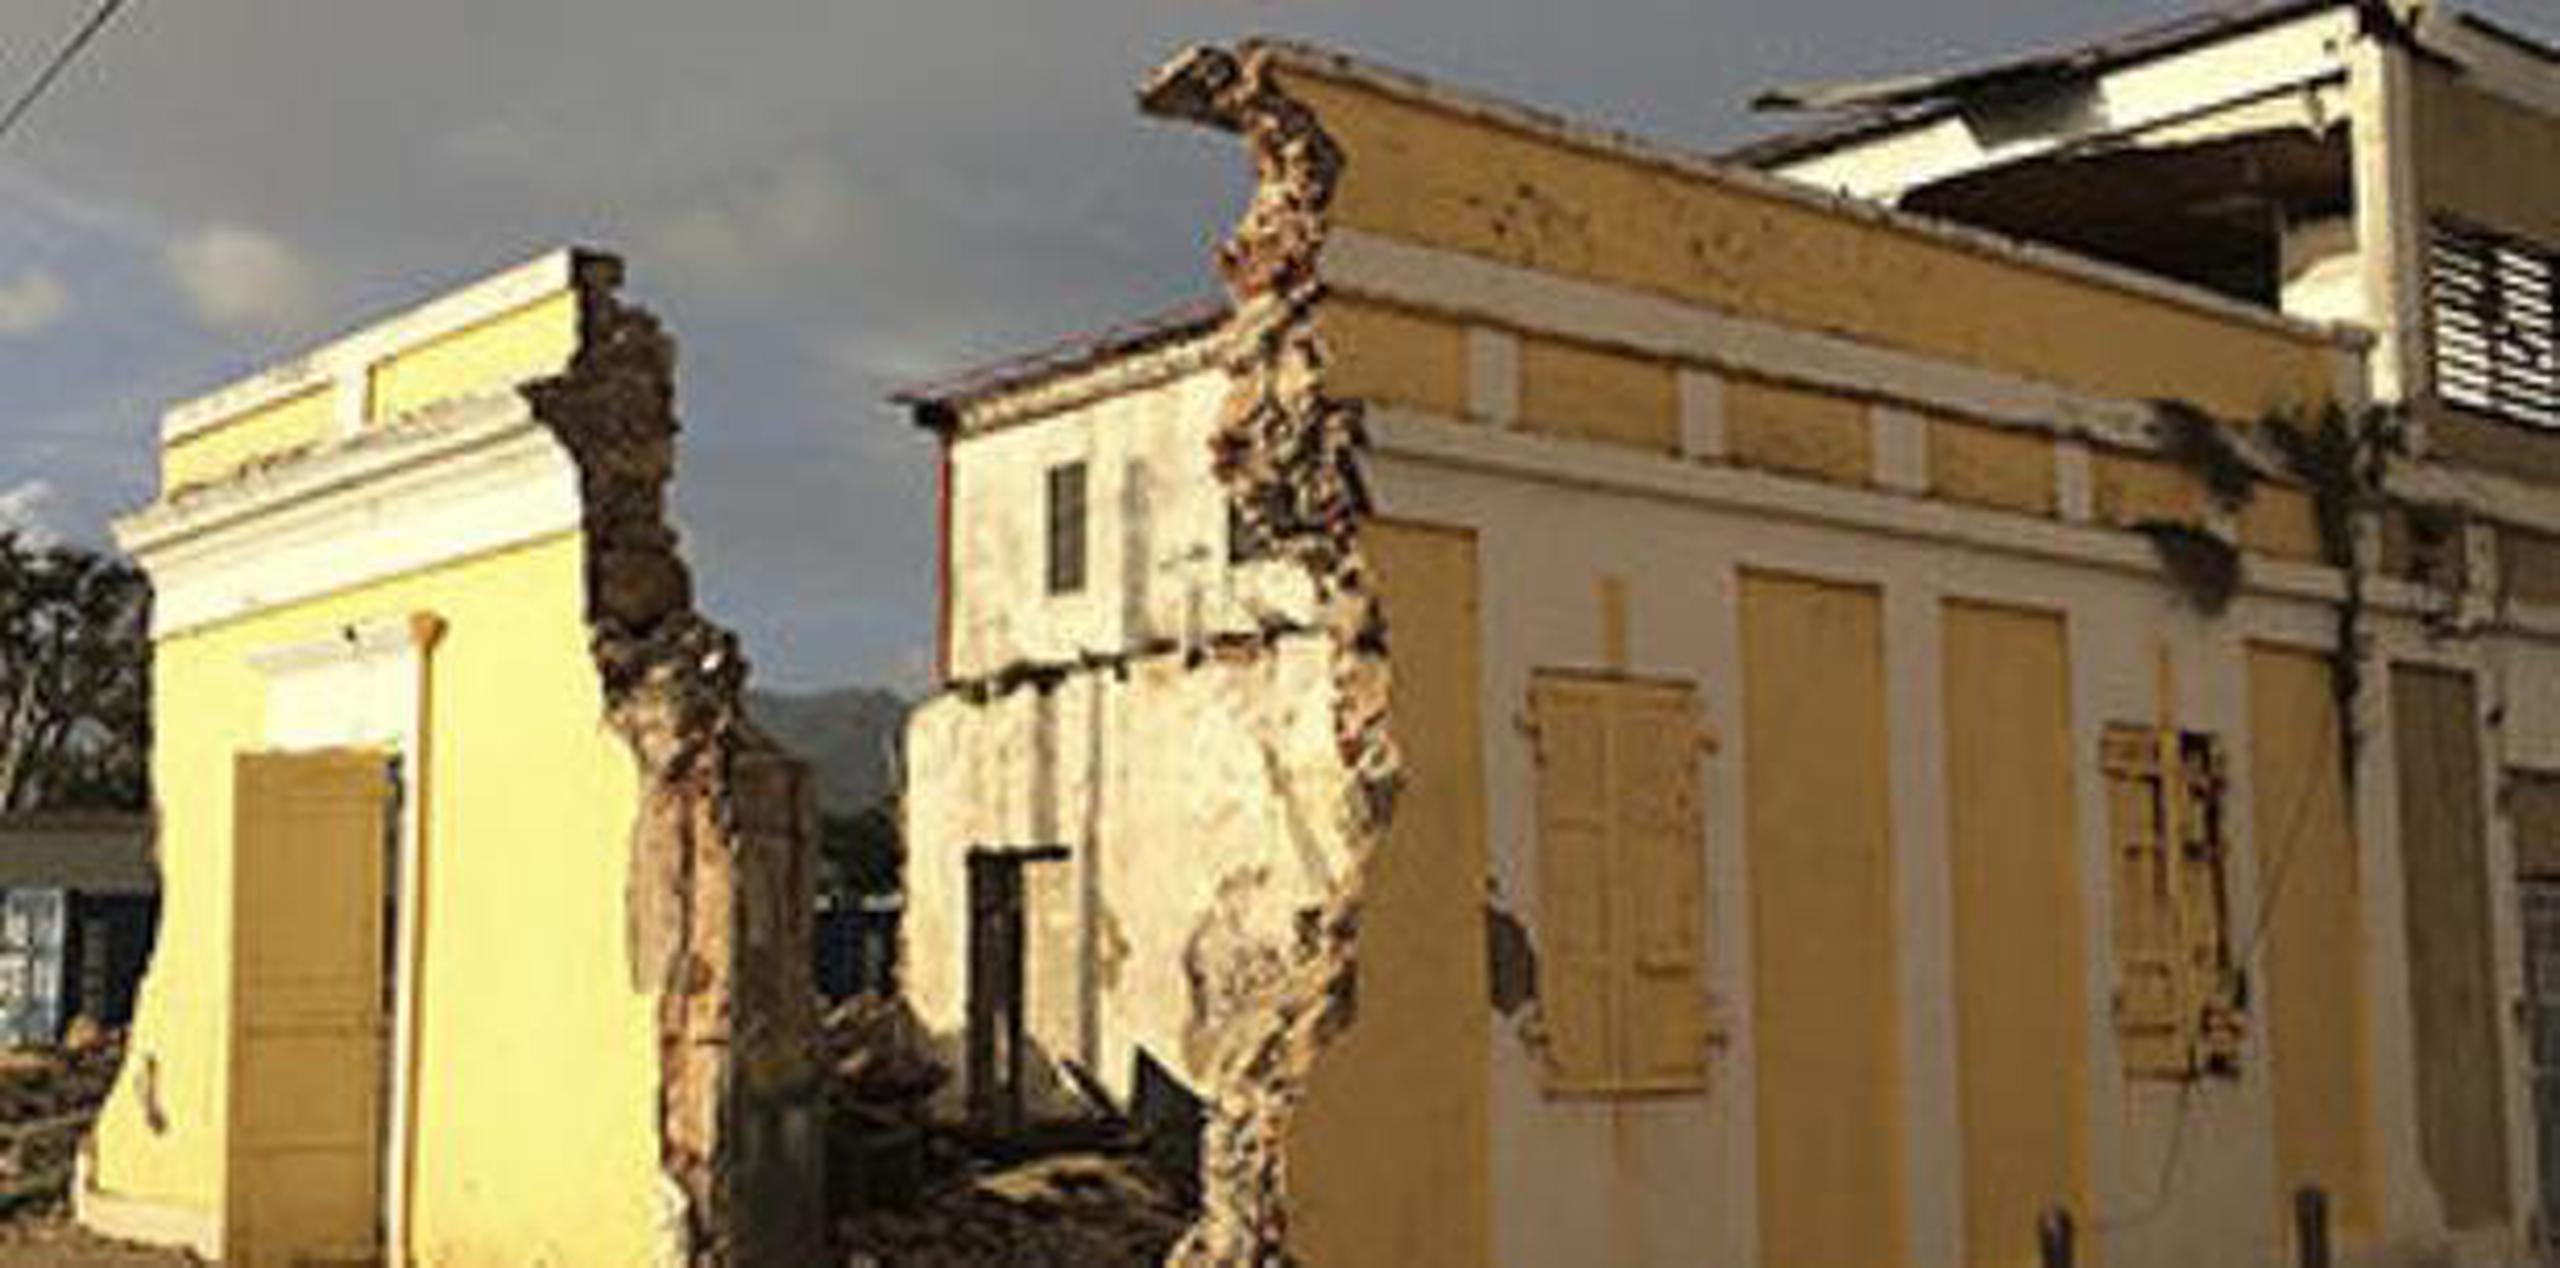 Arroyo, Coamo, Guayama, Ponce, y Aguirre en Salinas fueron las zonas históricas con más estructuras afectadas. (suministrada)